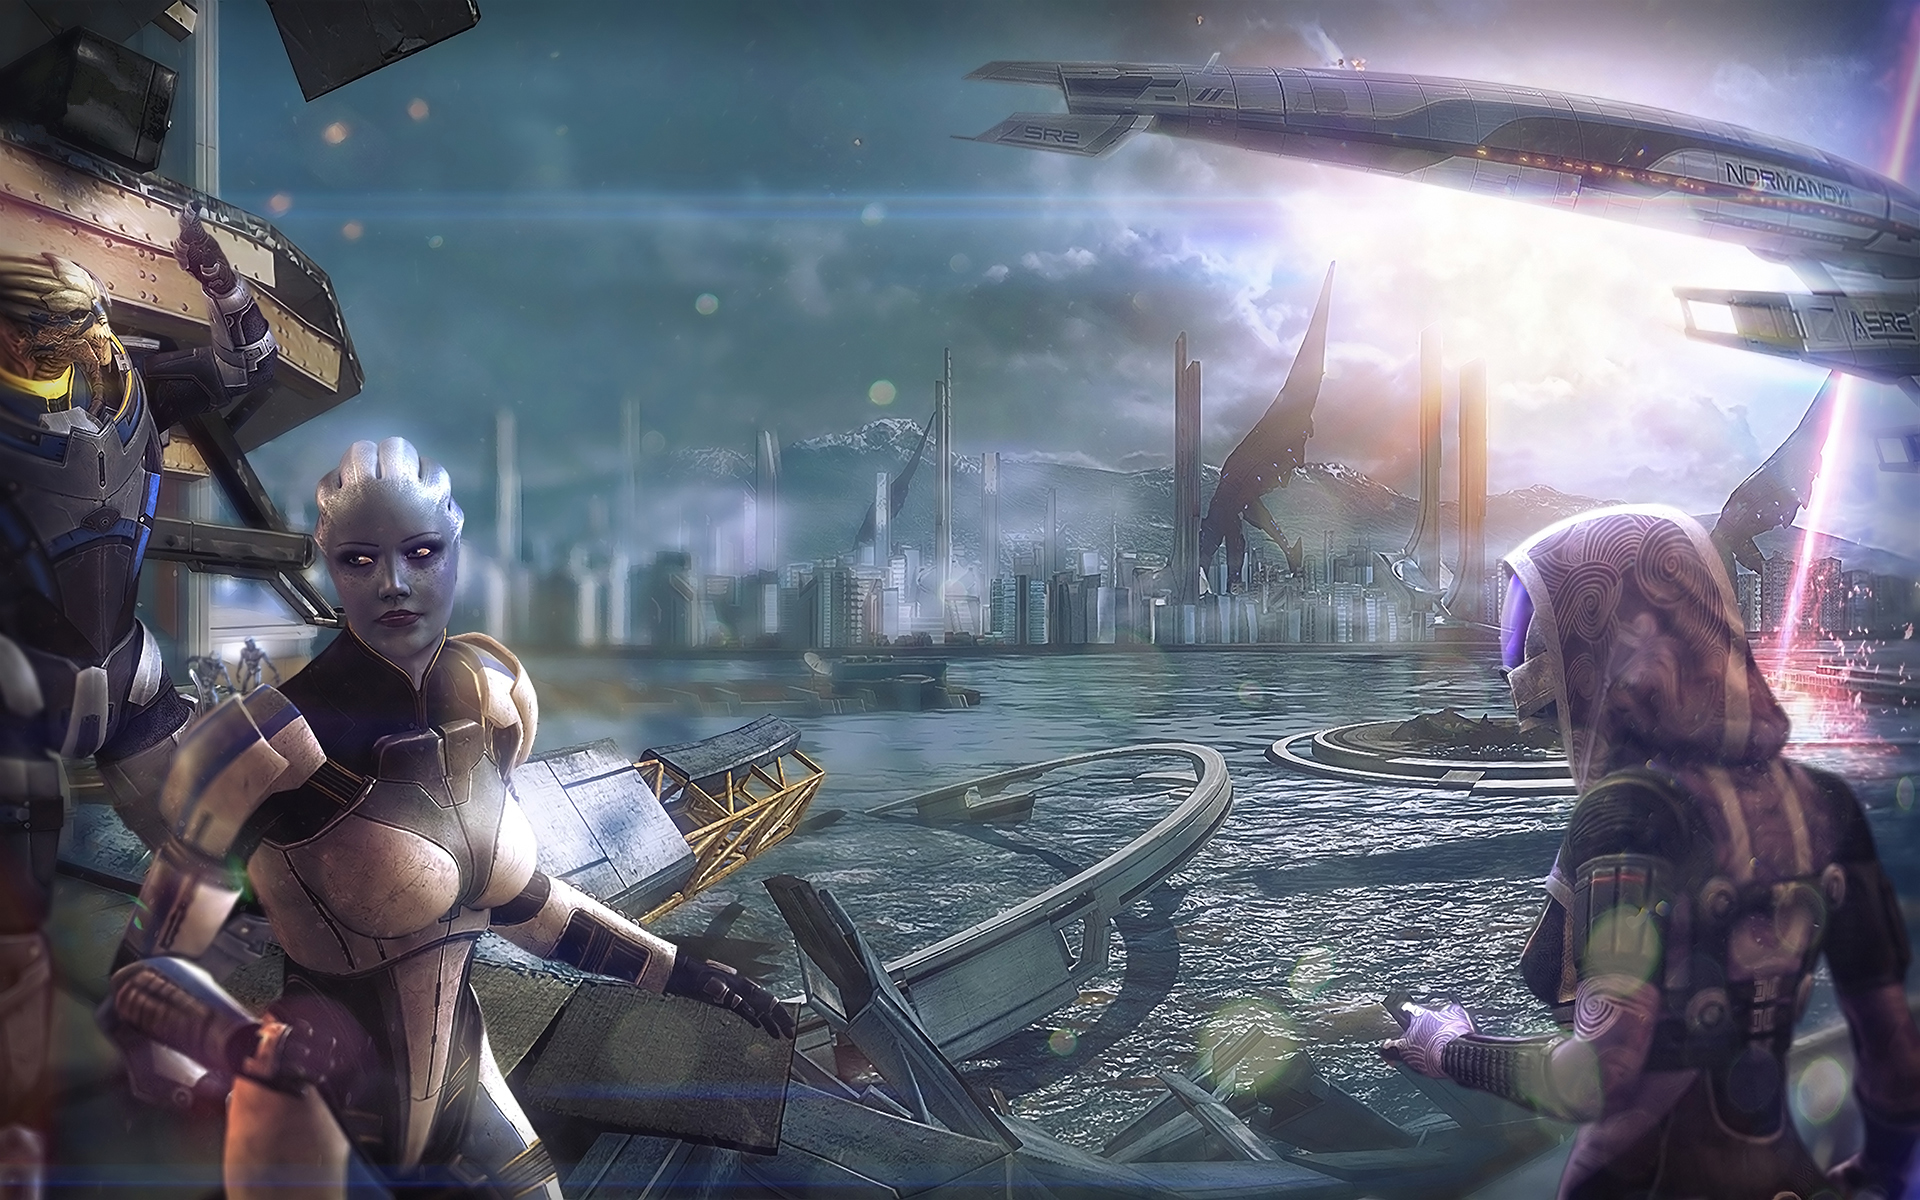 Descarga gratuita de fondo de pantalla para móvil de Mass Effect, Videojuego, Tali'zorah, Garrus Vakarian, Liara T'soni.